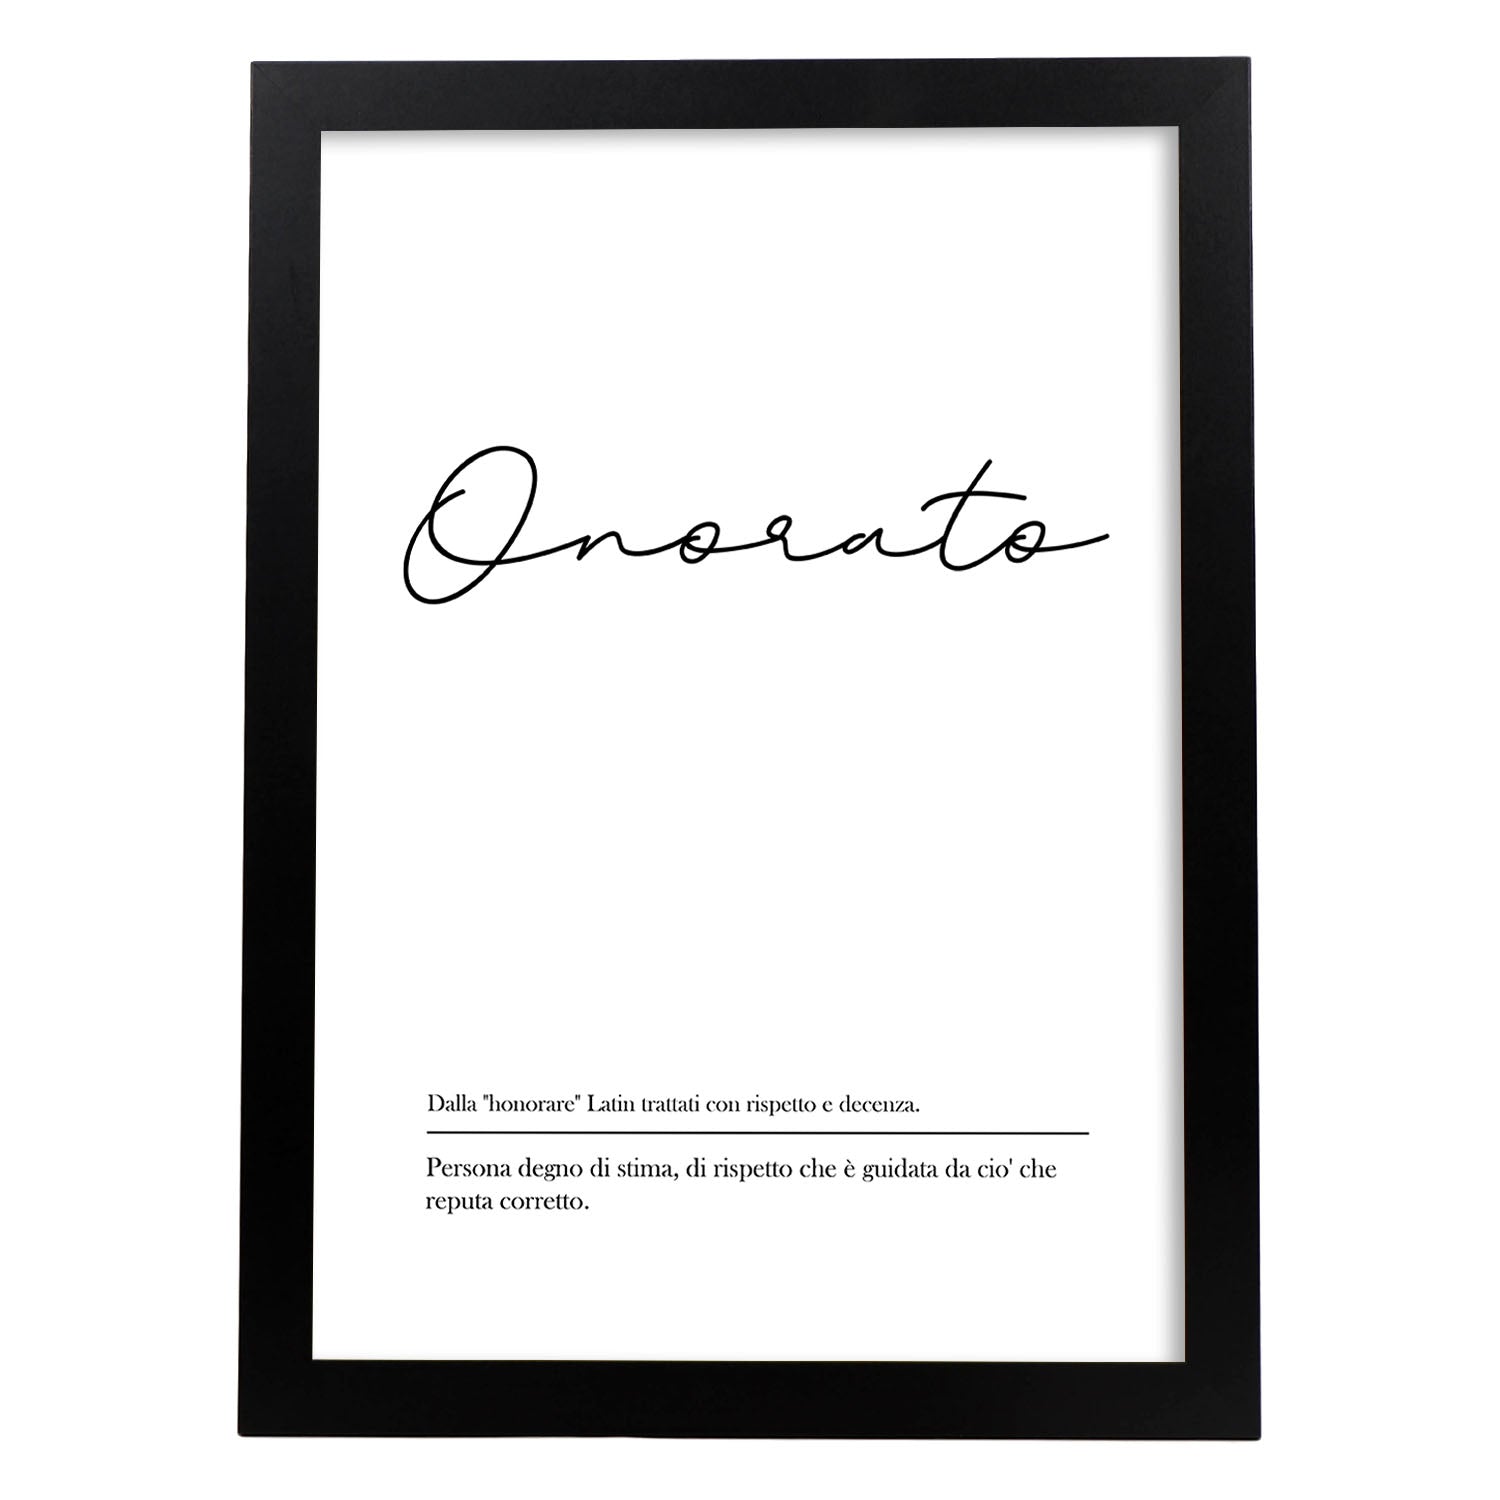 Lámina con definicion de palabras en italiano. Poster 'Onorato' de palabras con definiciones.-Artwork-Nacnic-A3-Marco Negro-Nacnic Estudio SL